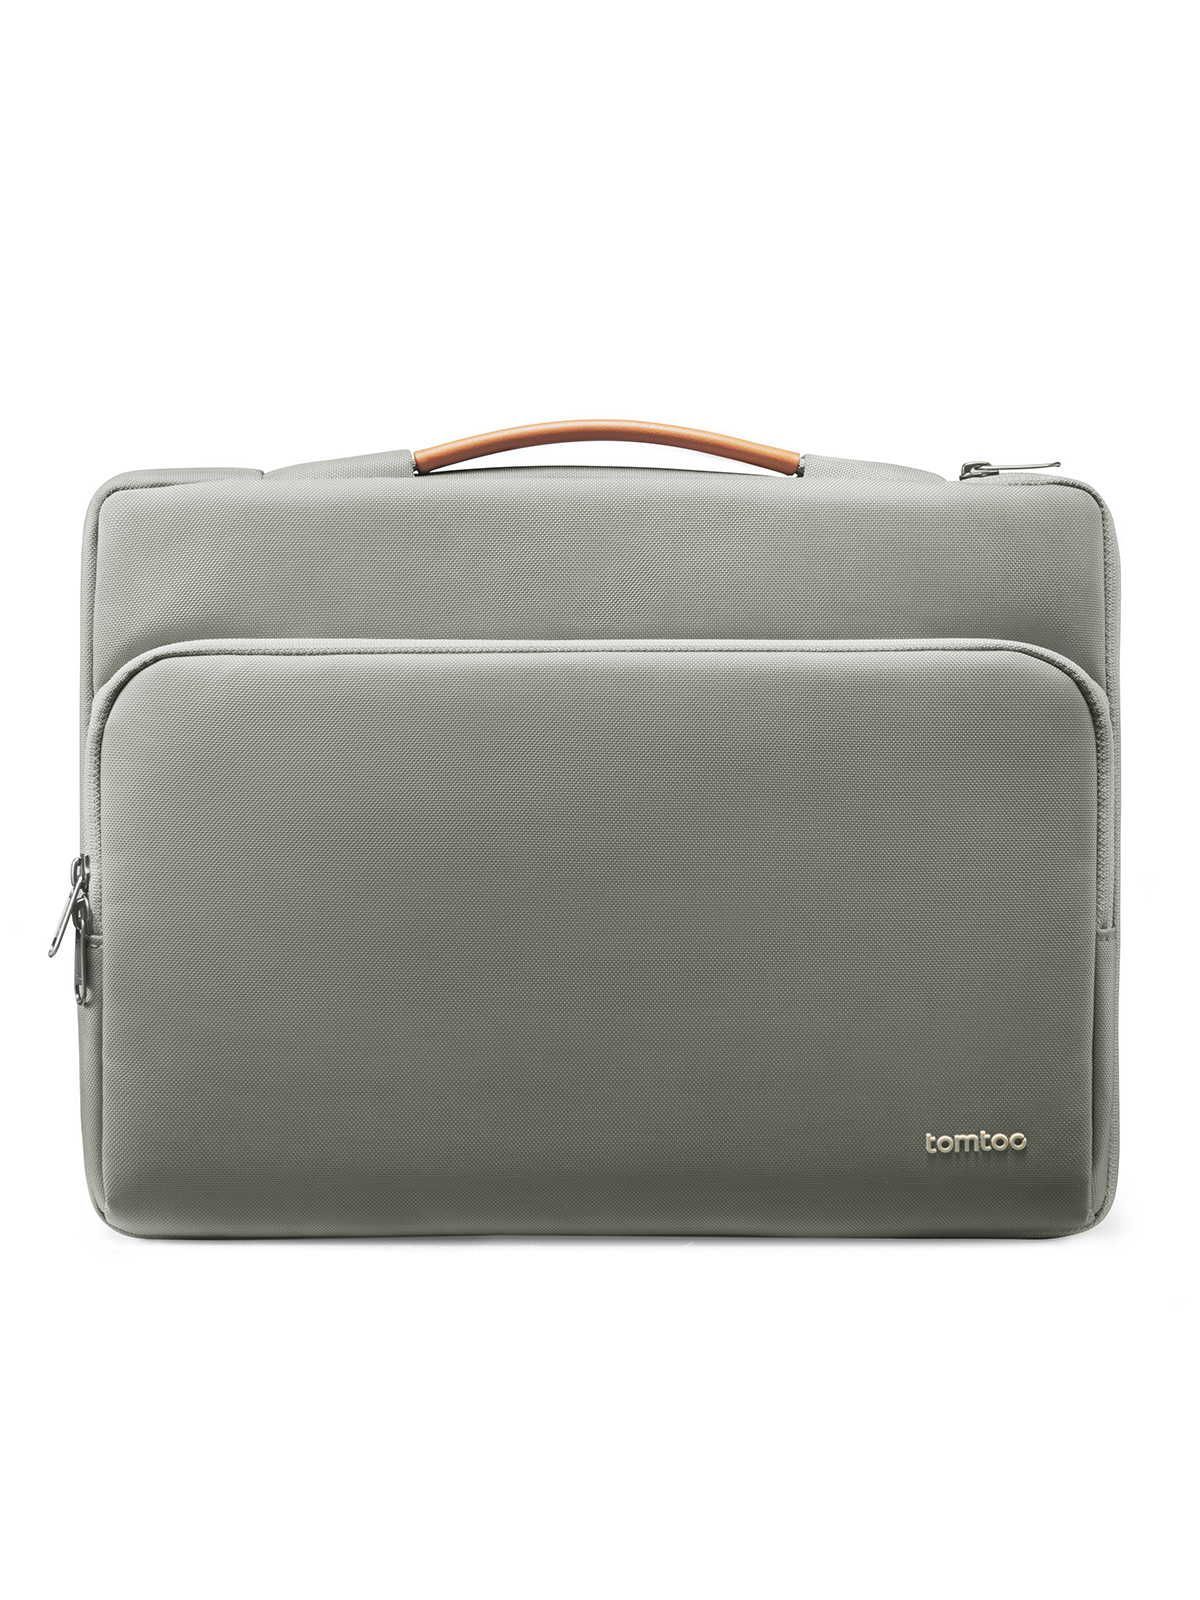 Сумки defender. Сумка Tomtoc Defender Laptop. Tomtoc Defender Laptop Handbag a14. Сумка Tomtoc Defender Laptop Shoulder Bag a42 для ноутбуков 15.6" серая. Чехол-сумка Tomtoc для ноутбуков Laptop Briefcase 13-13.5.